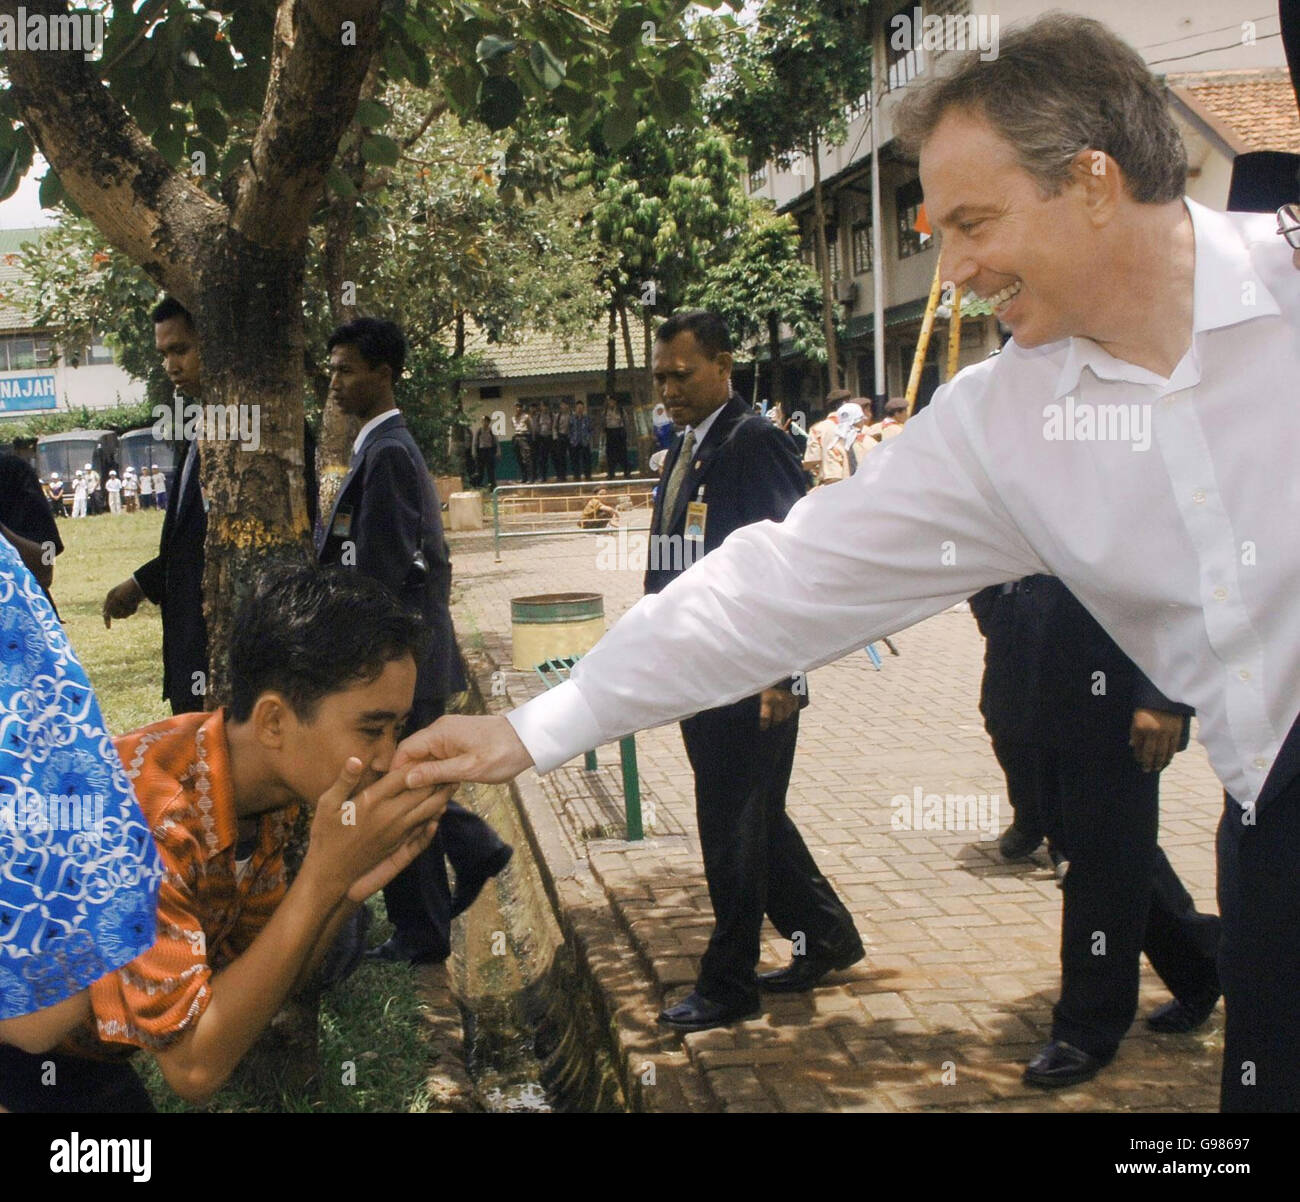 Der britische Premierminister Tony Blair trifft Schüler im Pondok Pesantren Darunnajah, einem islamischen Internat in Jakarta, am Donnerstag, den 30. März 2006. Blair hat heute zugesagt, bei der Terrorismusbekämpfung enger mit dem größten muslimischen Land der Welt zusammenzuarbeiten, aber die muslimischen Führer Indonesiens sagten ihm, dass seine Politik Extremismus besäte. Herr Blair, begleitet von seiner Frau Cherie, ist gestern Abend in der Hauptstadt Jakarta auf der letzten Etappe einer siebentägigen diplomatischen Marathonmission niedergegangen. Siehe PA Geschichte POLITIK Blair. DRÜCKEN Sie VERBANDSFOTO. Bildnachweis sollte lauten: Stefan Rousseau/PA. Stockfoto